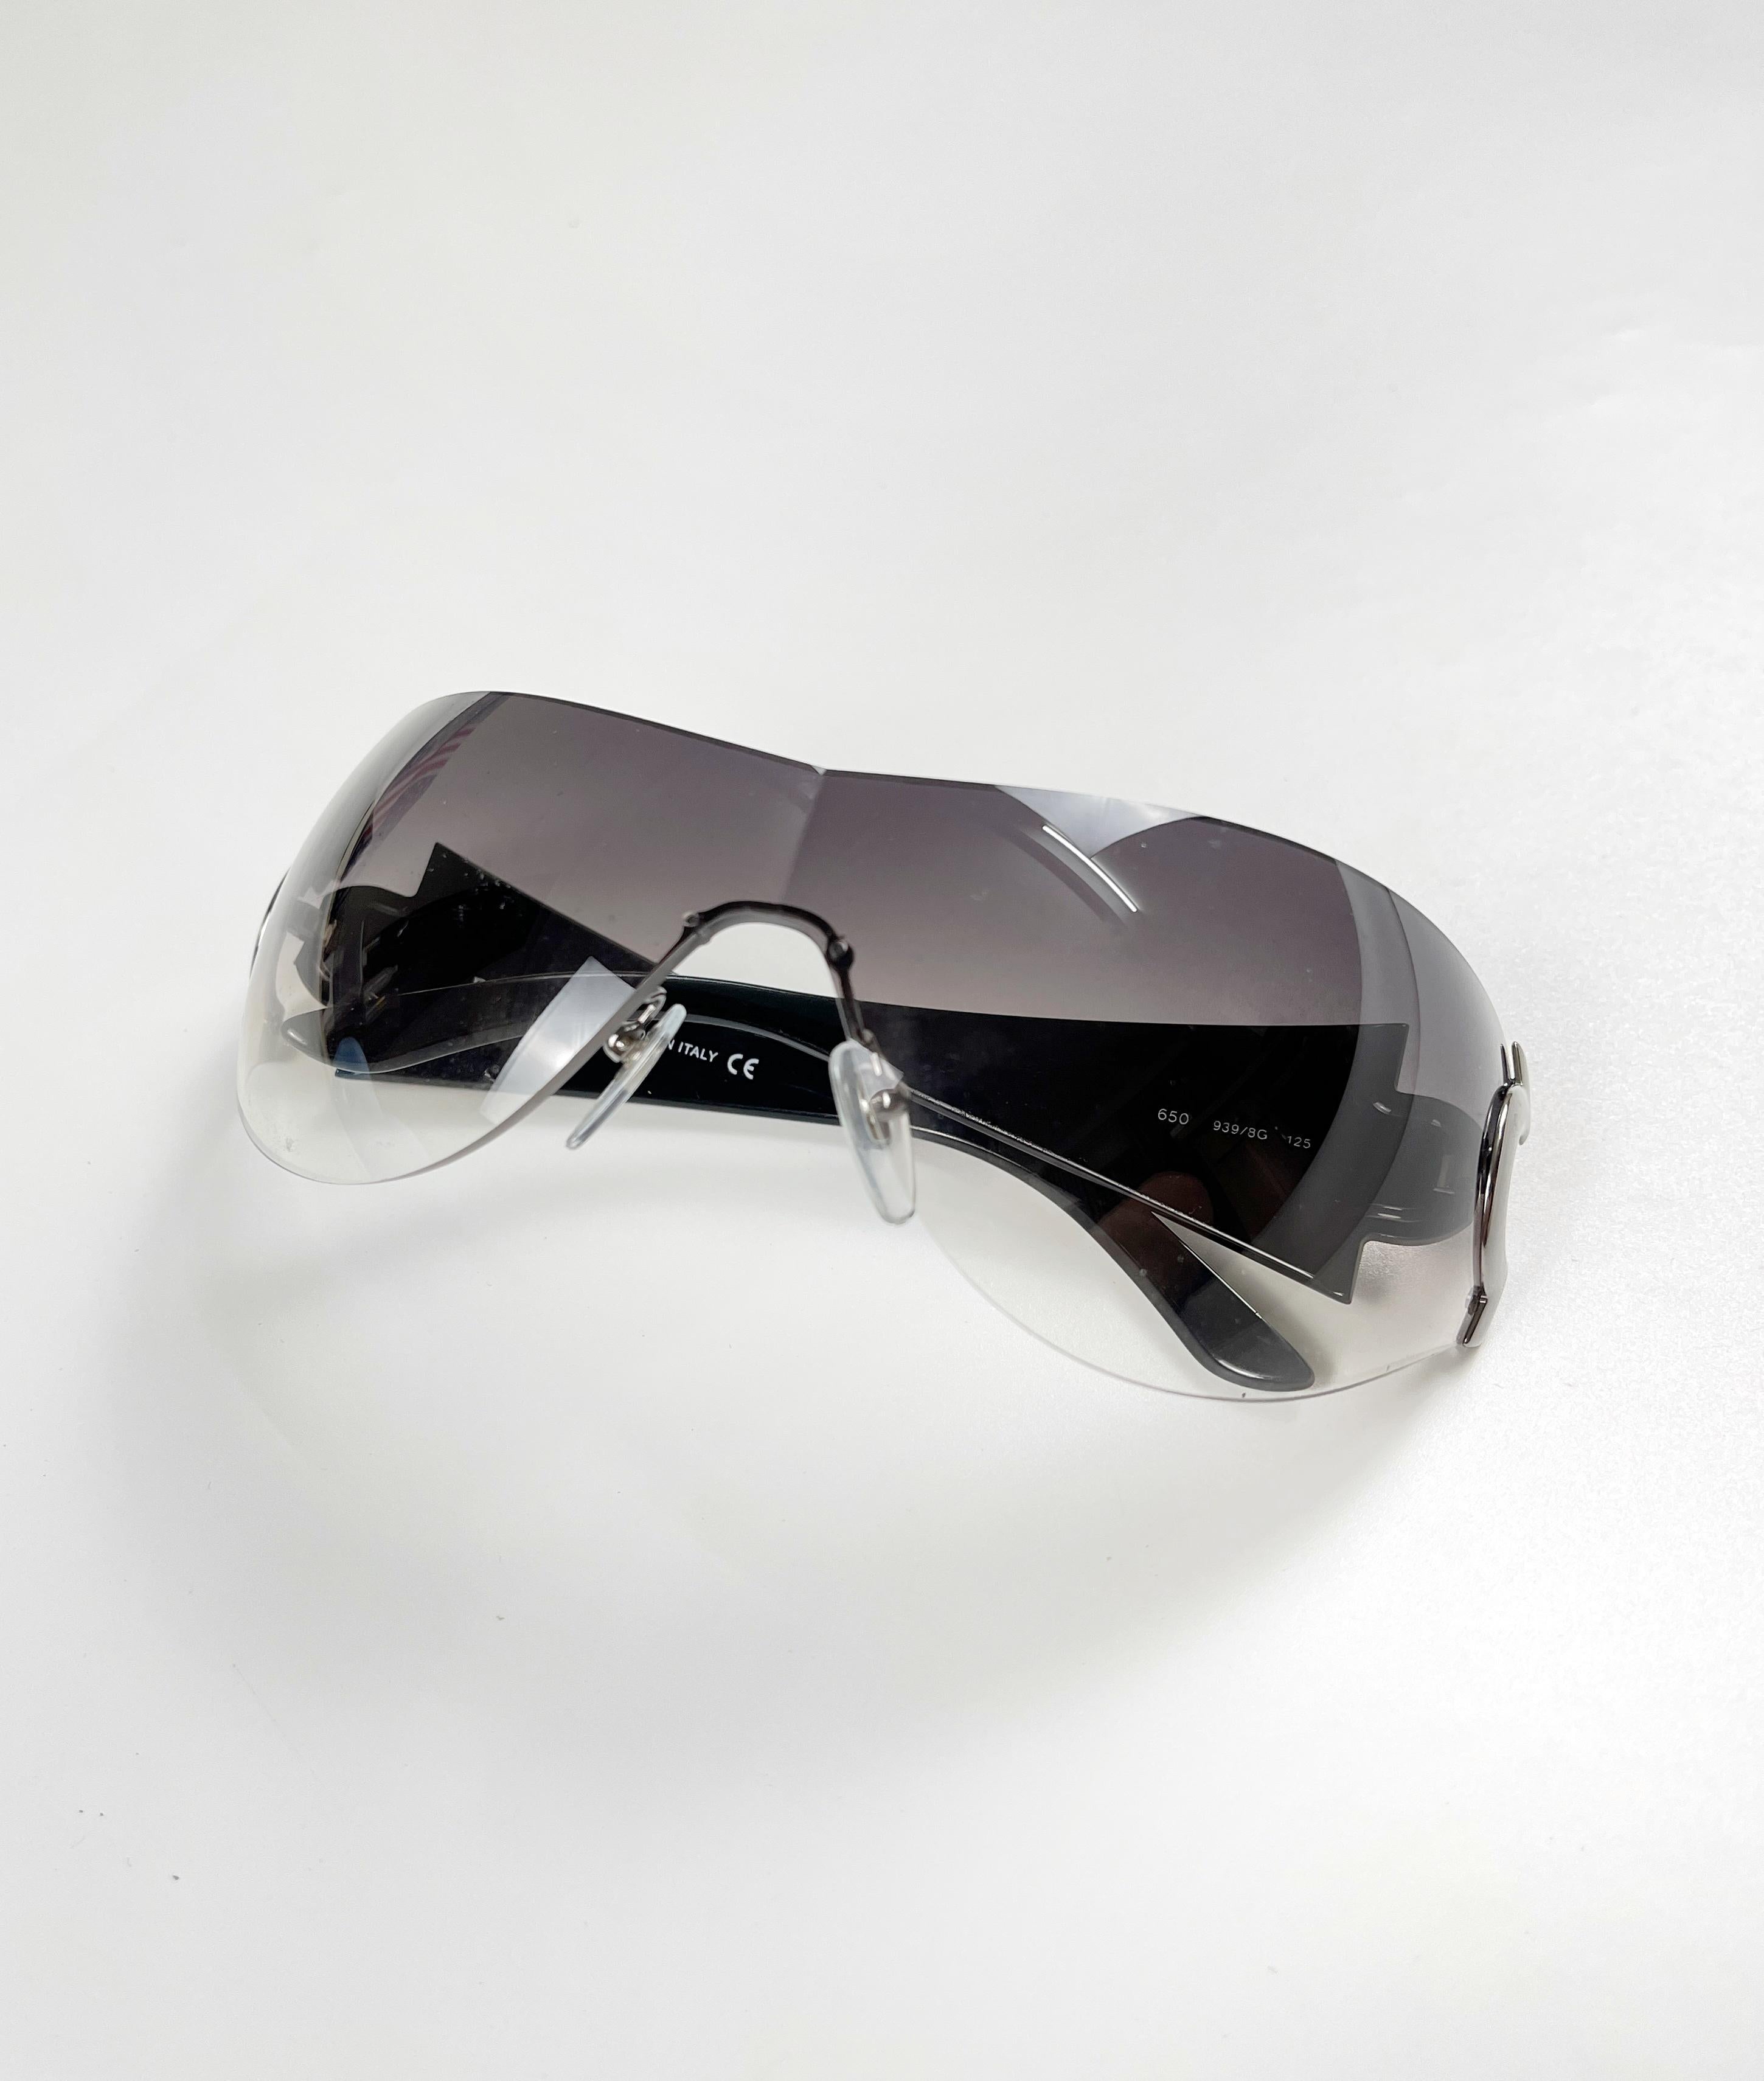 Sonnenbrille des italienischen Luxus-Modehauses Bvlgari.

Die Sonnenbrille ist in neuem Zustand.

Zustand: Neu, ohne Tags.

Größe: Eine Größe für alle 

Wenn Sie Fragen zu Anfragen haben, senden Sie uns bitte eine direkte Nachricht.

